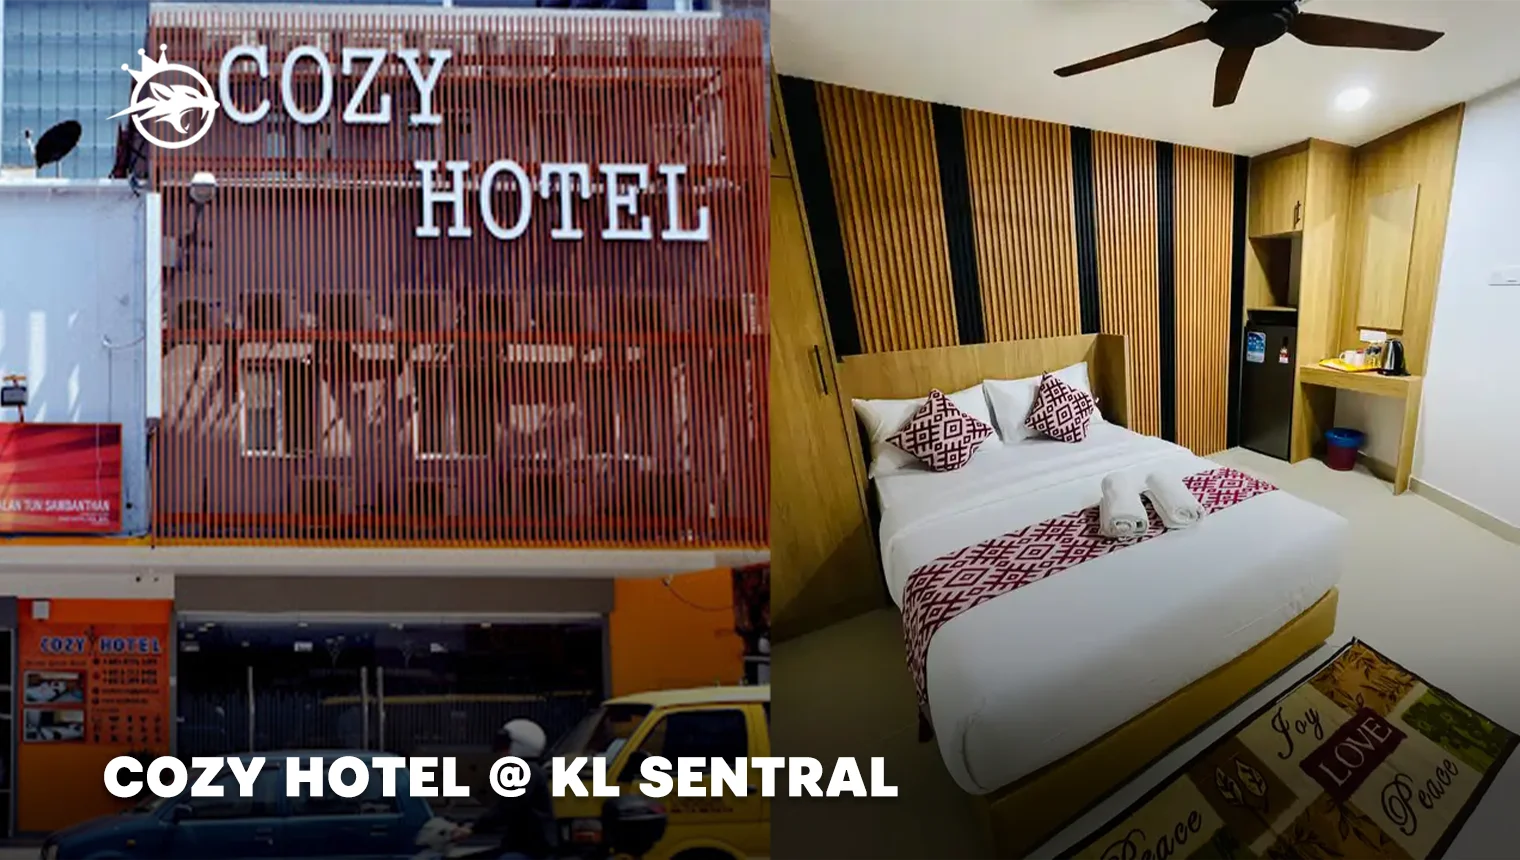 Cozy Hotel @ KL Sentral